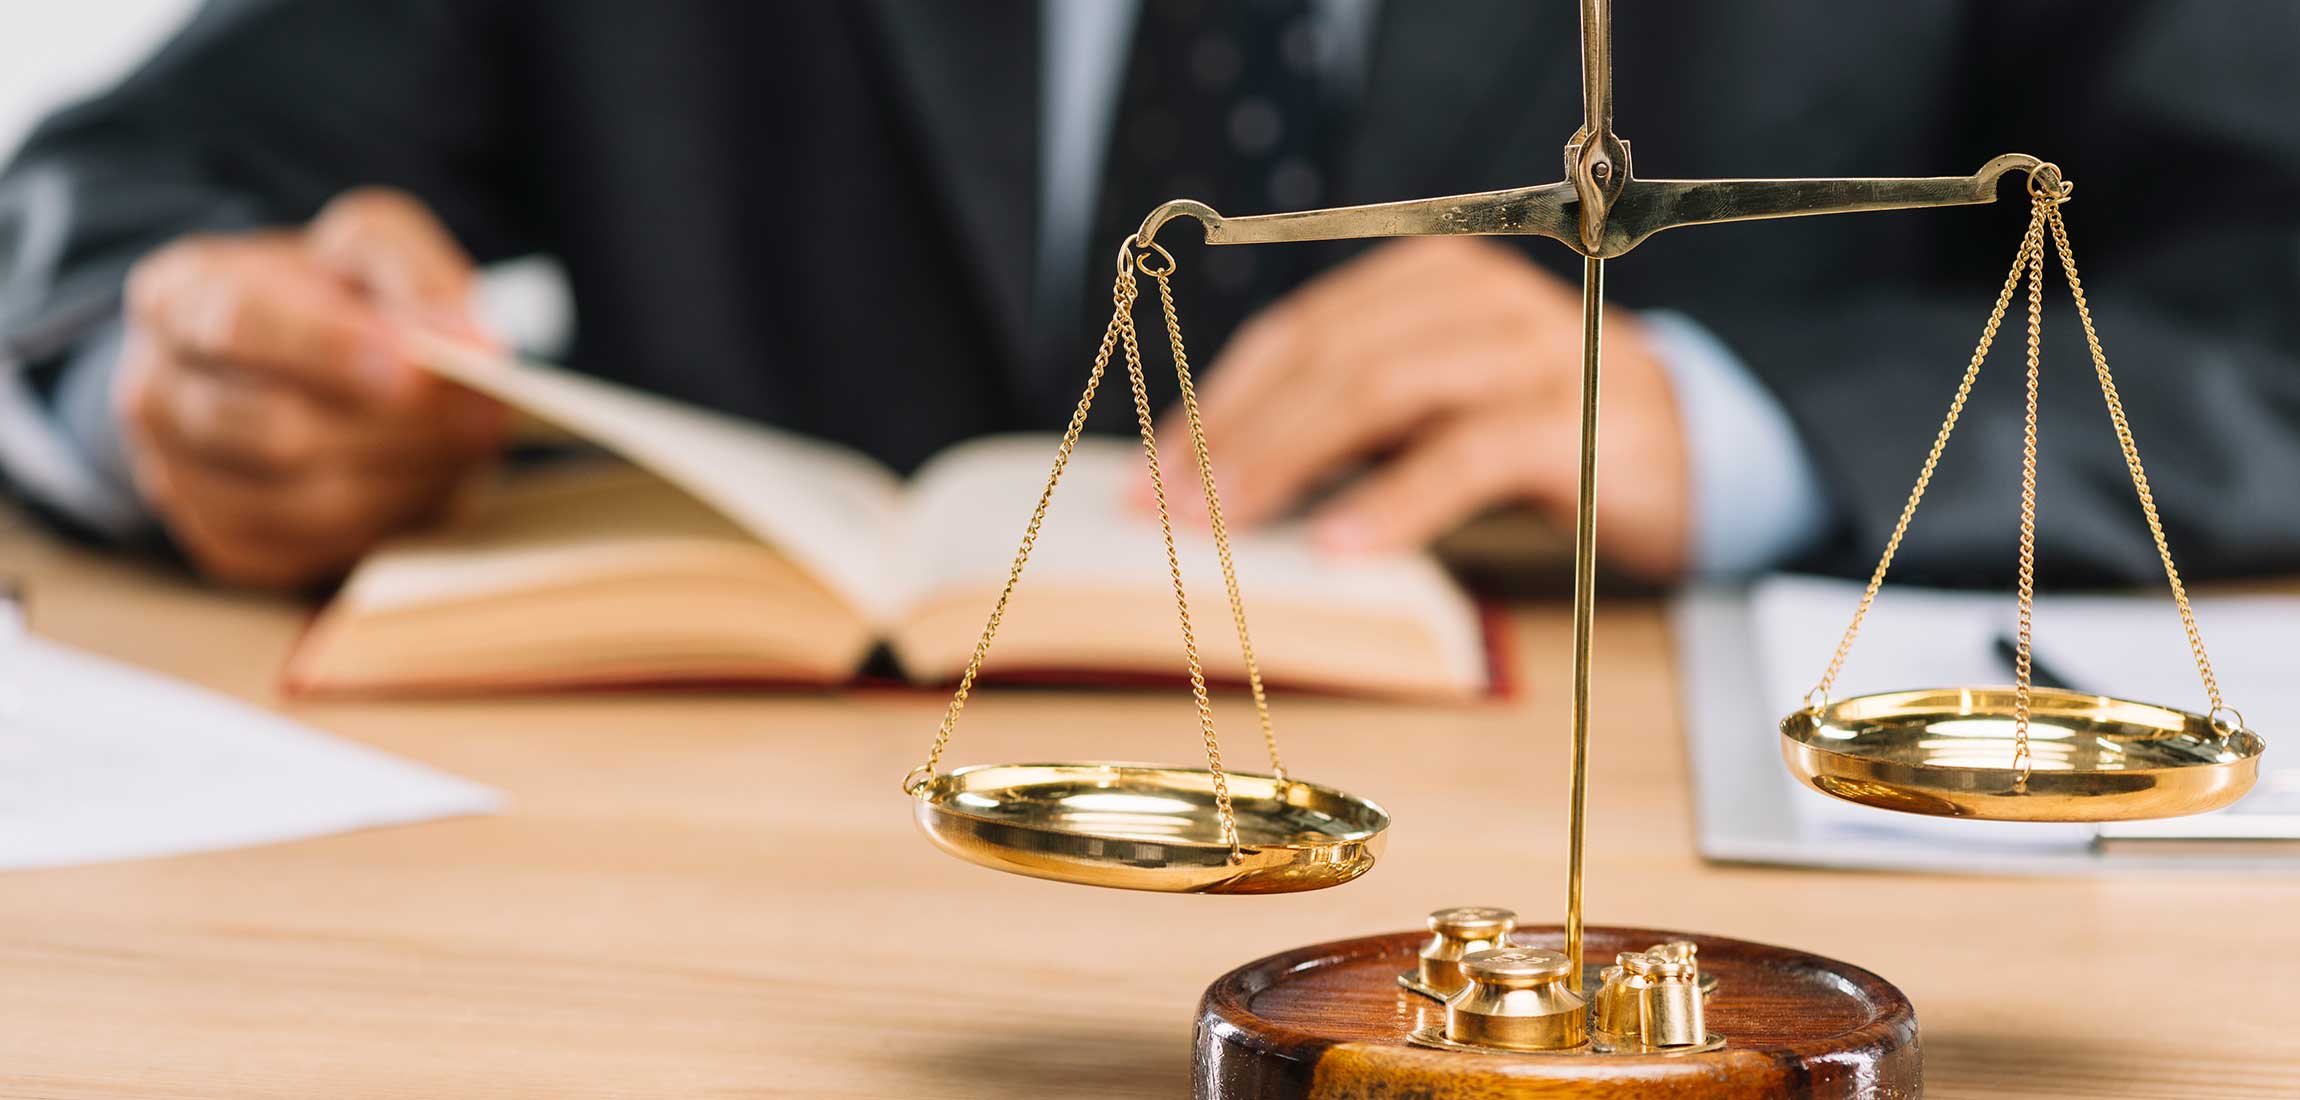 Libri sul diritto all’oblio e cronaca giudiziaria